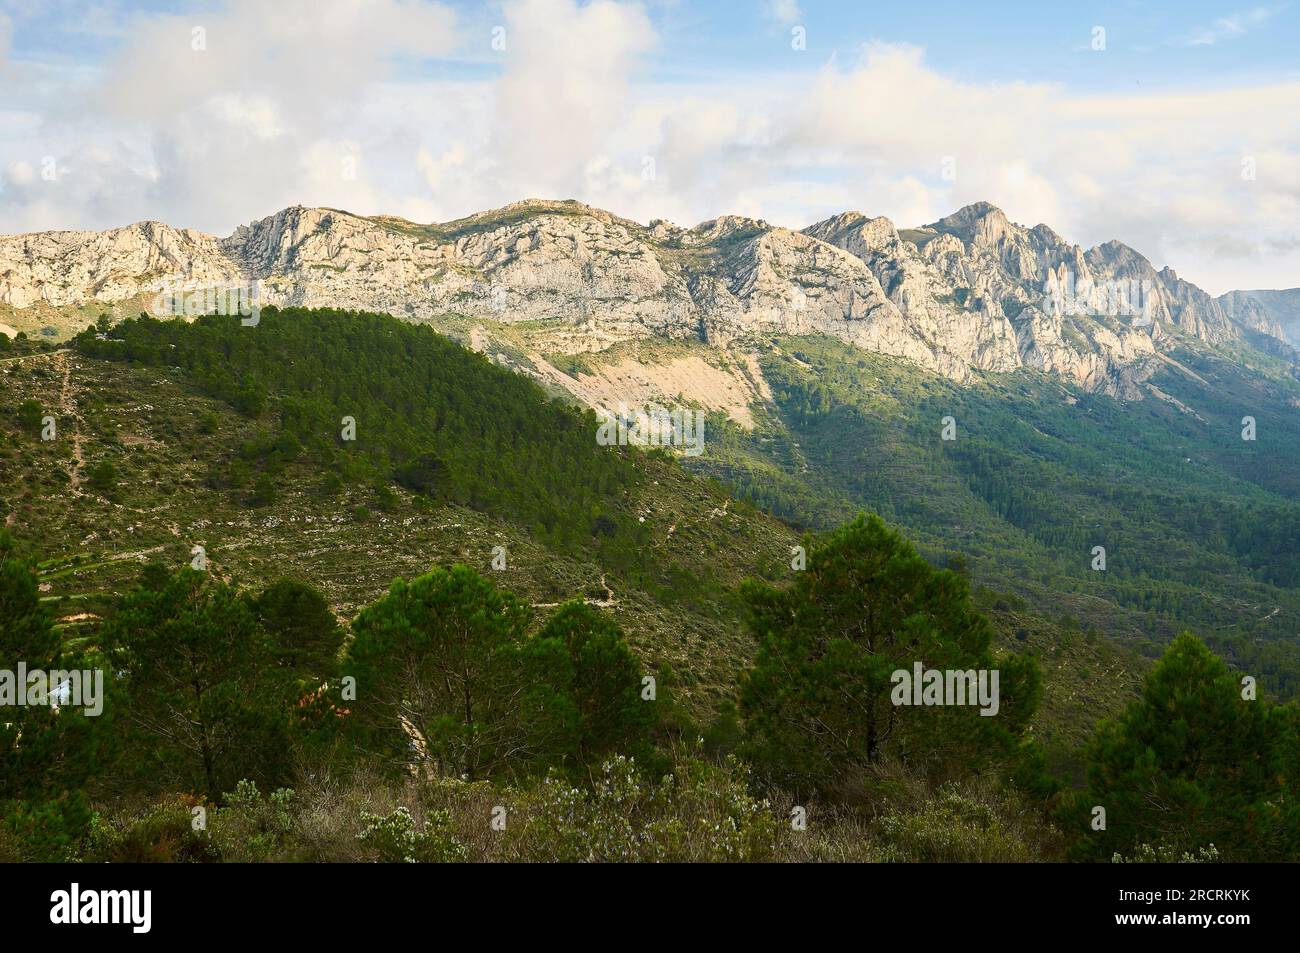 Vista panoramica della catena montuosa della Serra del Ferrer dal belvedere Coll de Rates (Tárbena, Marina Baixa, Alicante, Comunità Valenciana, Spagna) Foto Stock